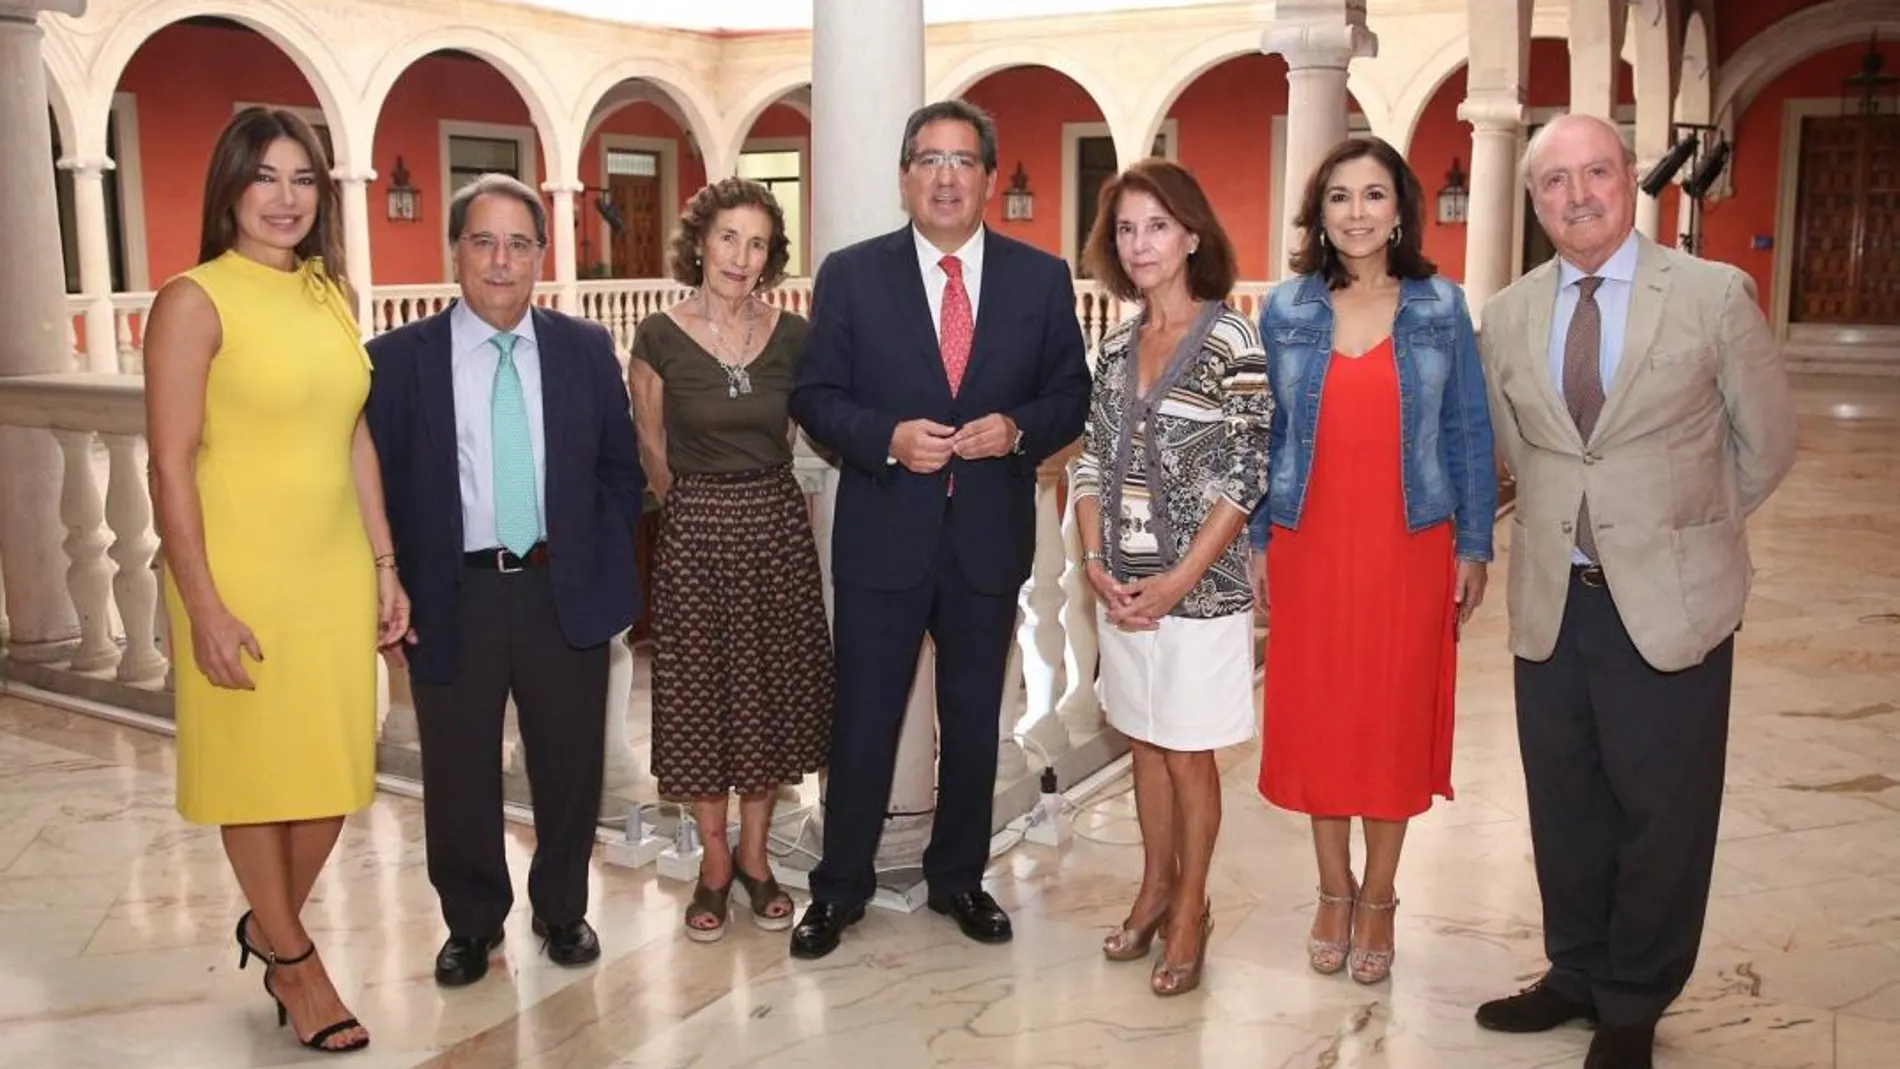 El jurado se reunió en la Fundación Cajasol / Foto: La Razón